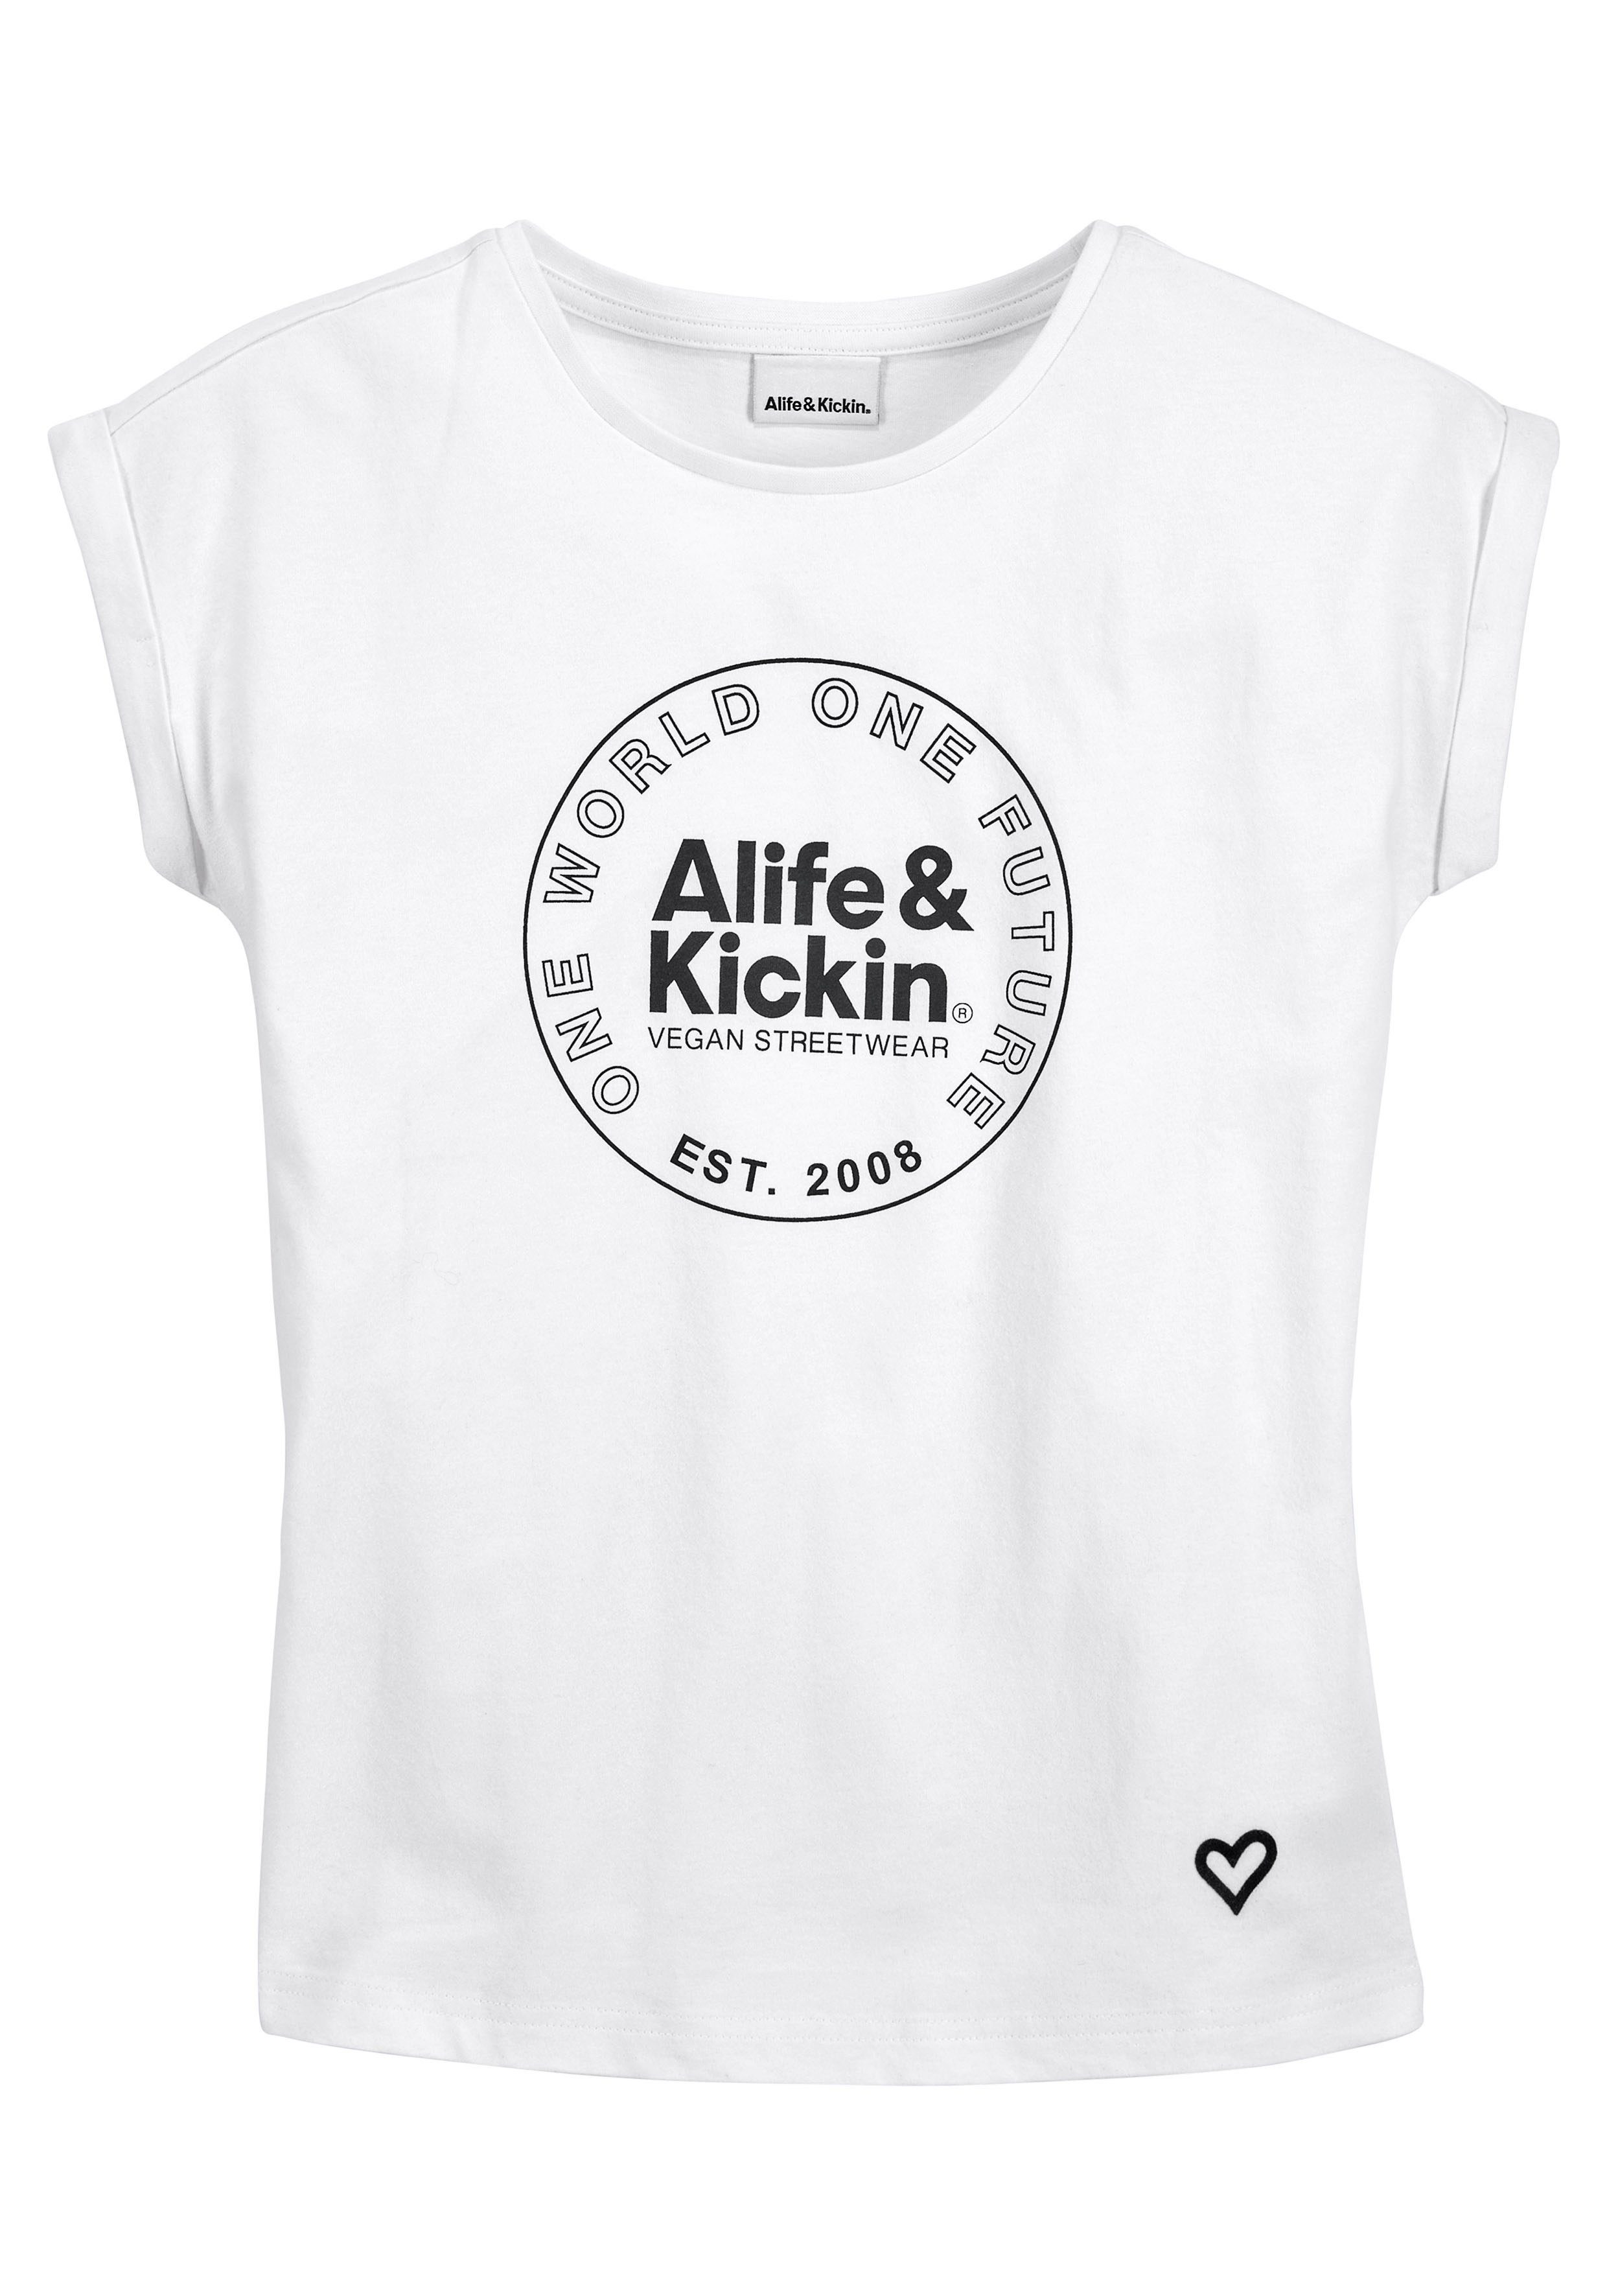 & für NEUE T-Shirt Druck, mit Kids. MARKE! Kickin Logo Kickin Alife & Alife